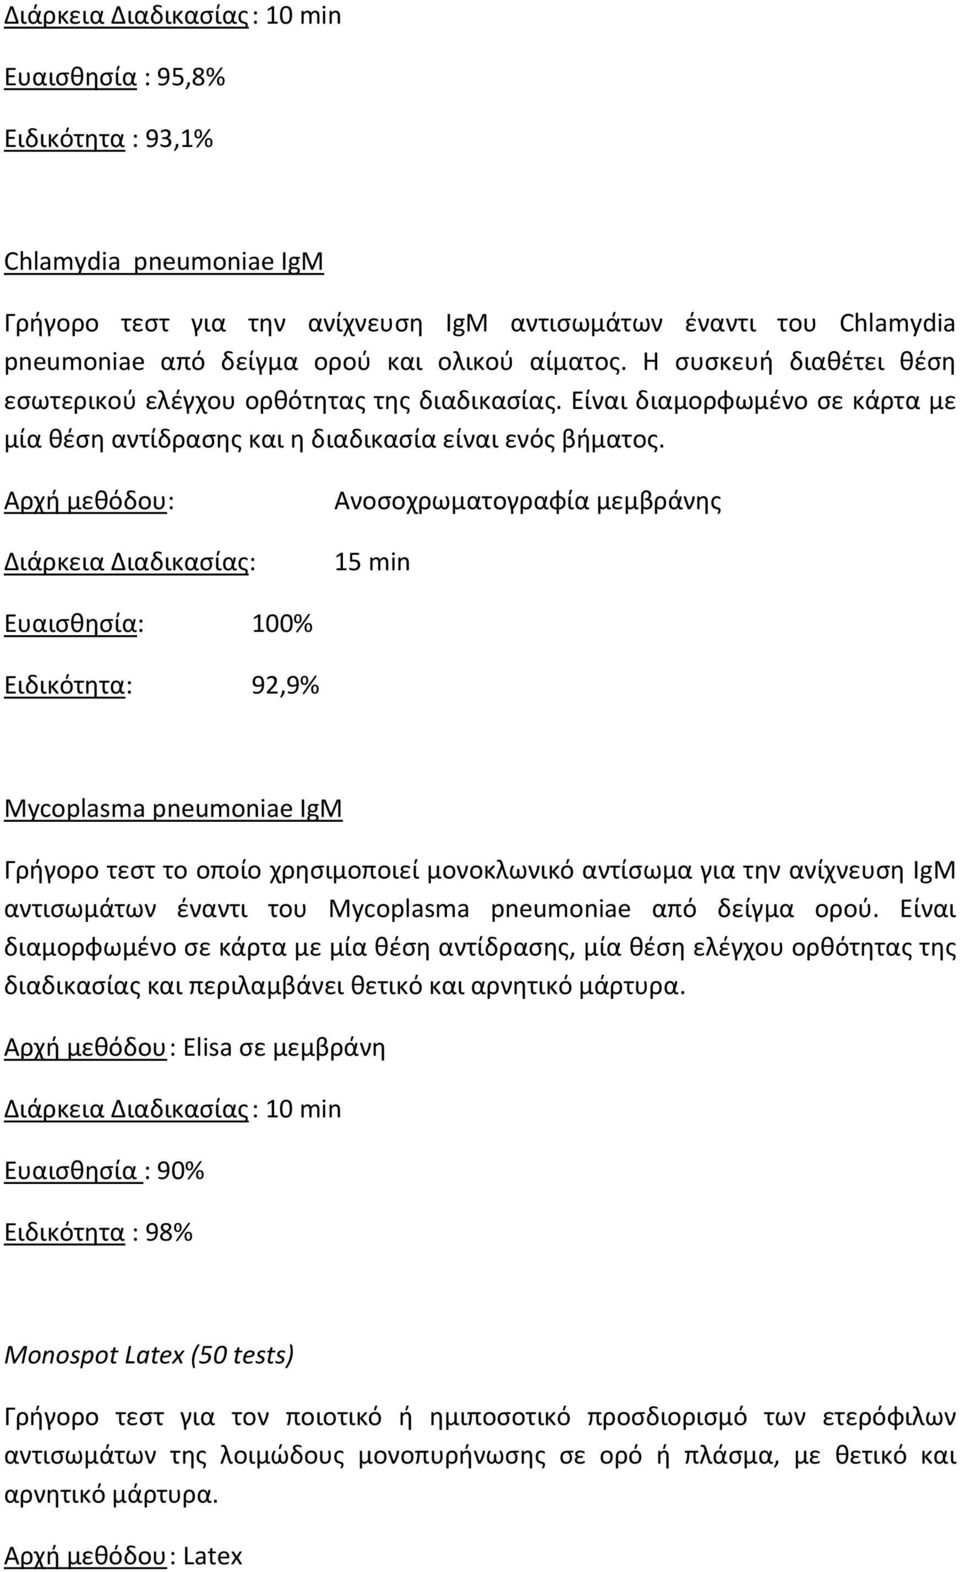 Αρχή μεθόδου: Διάρκεια Διαδικασίας: Ανοσοχρωματογραφία μεμβράνης 15 min Ευαισθησία: 100% Ειδικότητα: 92,9% Mycoplasma pneumoniae IgM Γρήγορο τεστ το οποίο χρησιμοποιεί μονοκλωνικό αντίσωμα για την